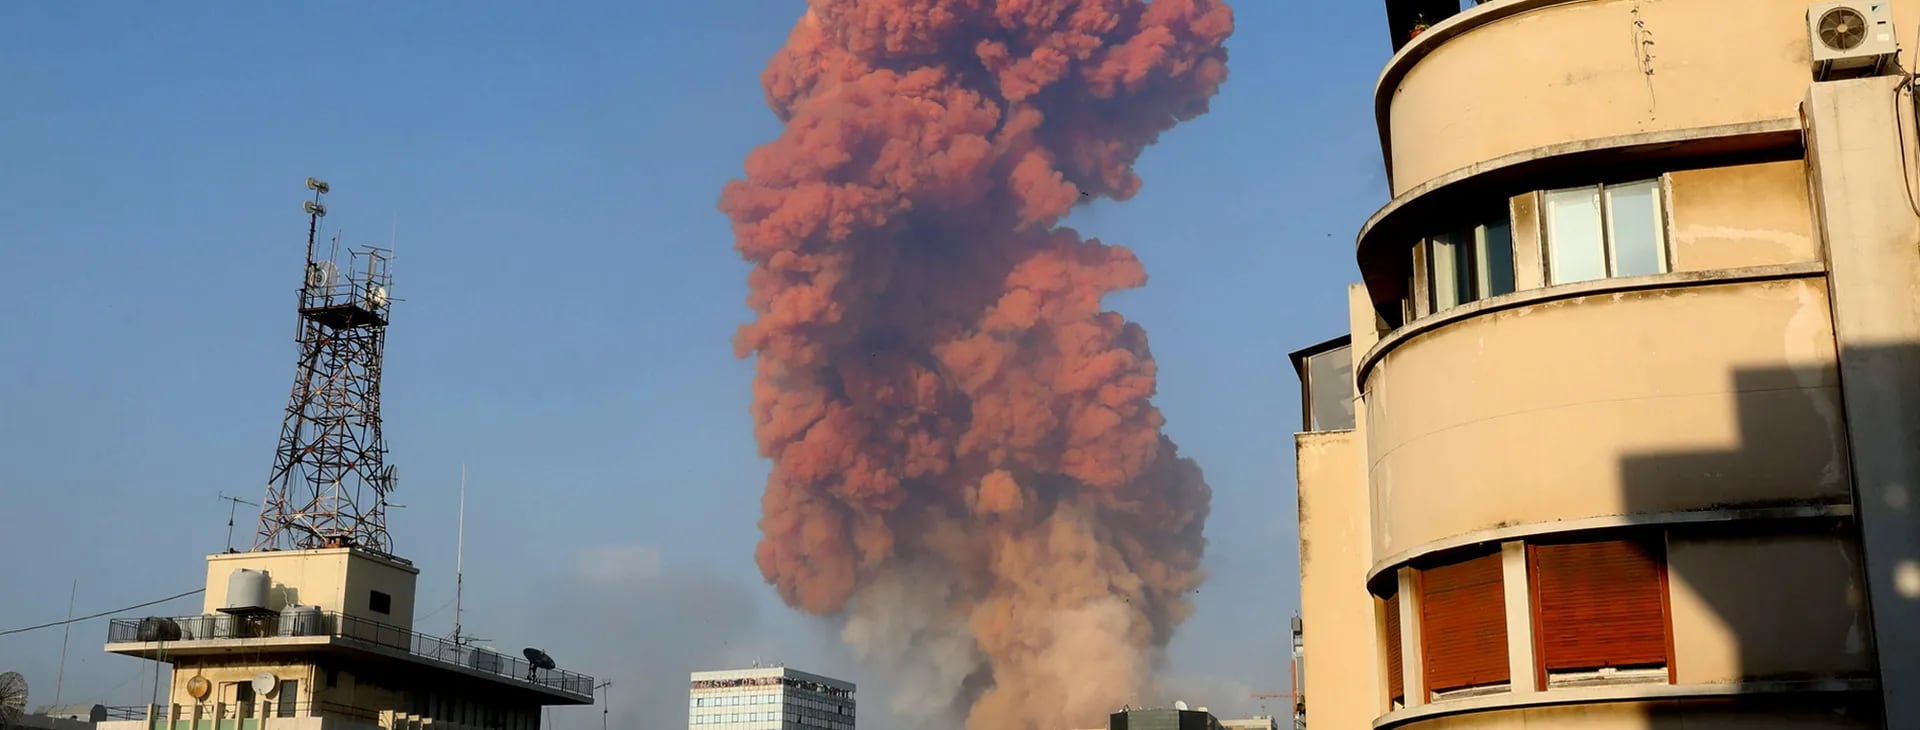 Impactantes imágenes de la explosión en Beirut